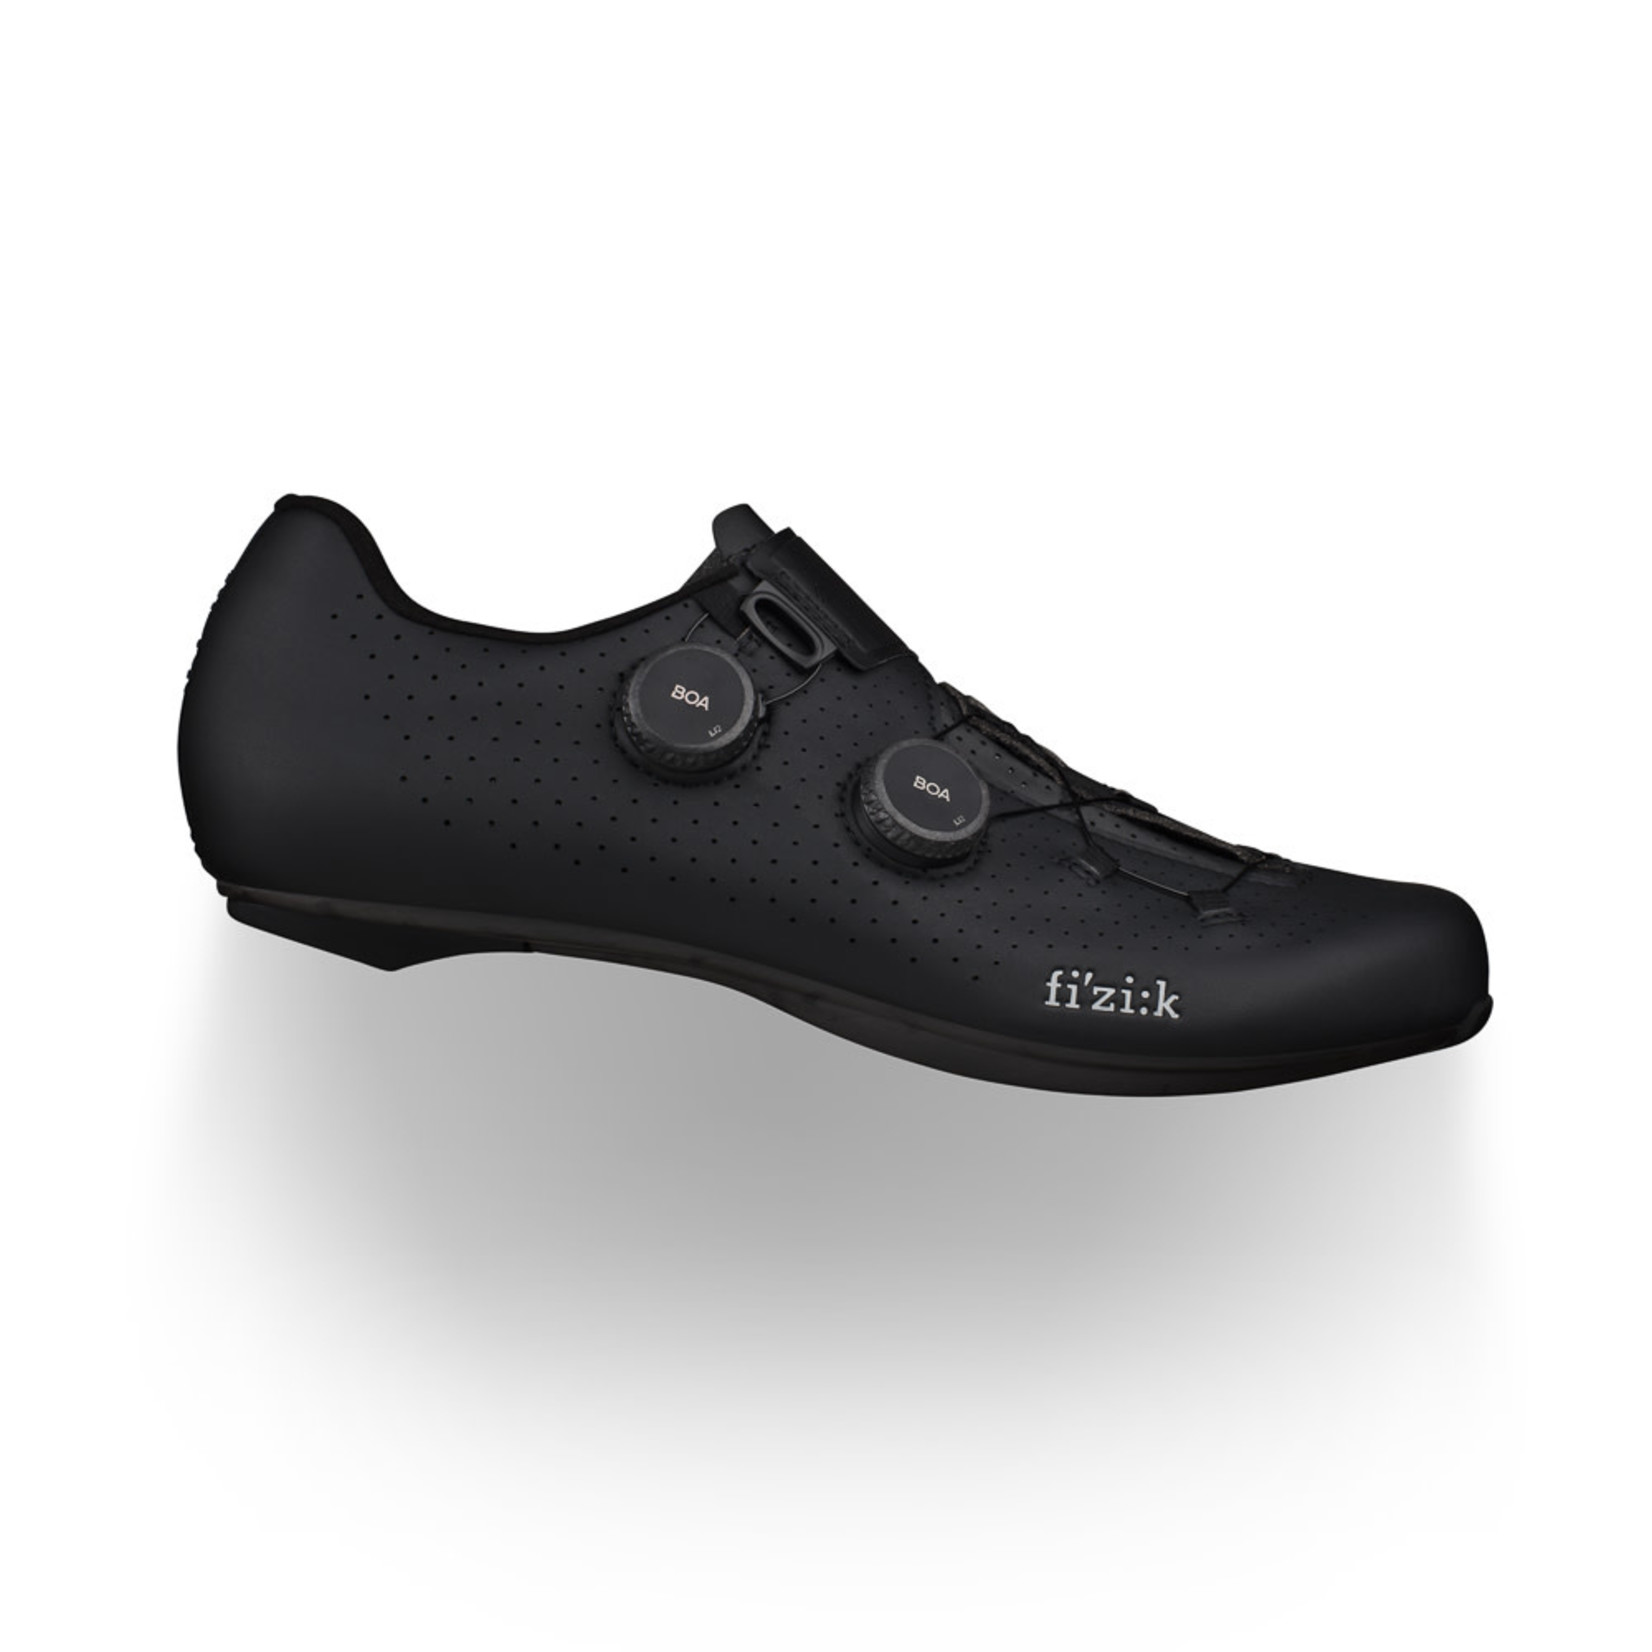 Fizik Fizik Vento Infinito Full Carbon Bike/Cycling Shoes - Black/Black